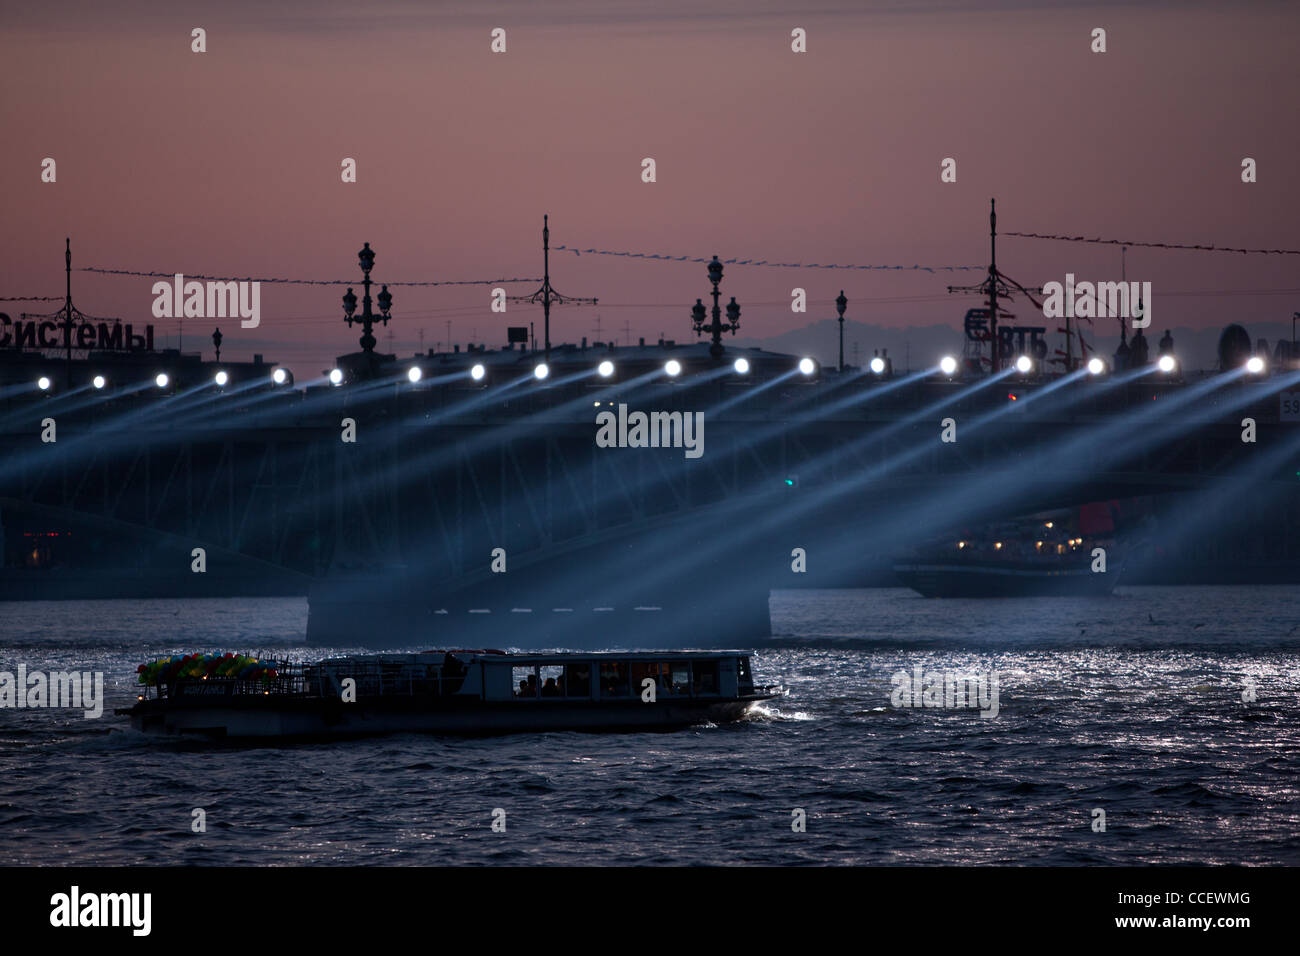 Bateau de croisière approche du pont sur la Neva. Les feux fonctionnent de la surface de l'eau. Nuits blanches à Saint-Pétersbourg. Banque D'Images